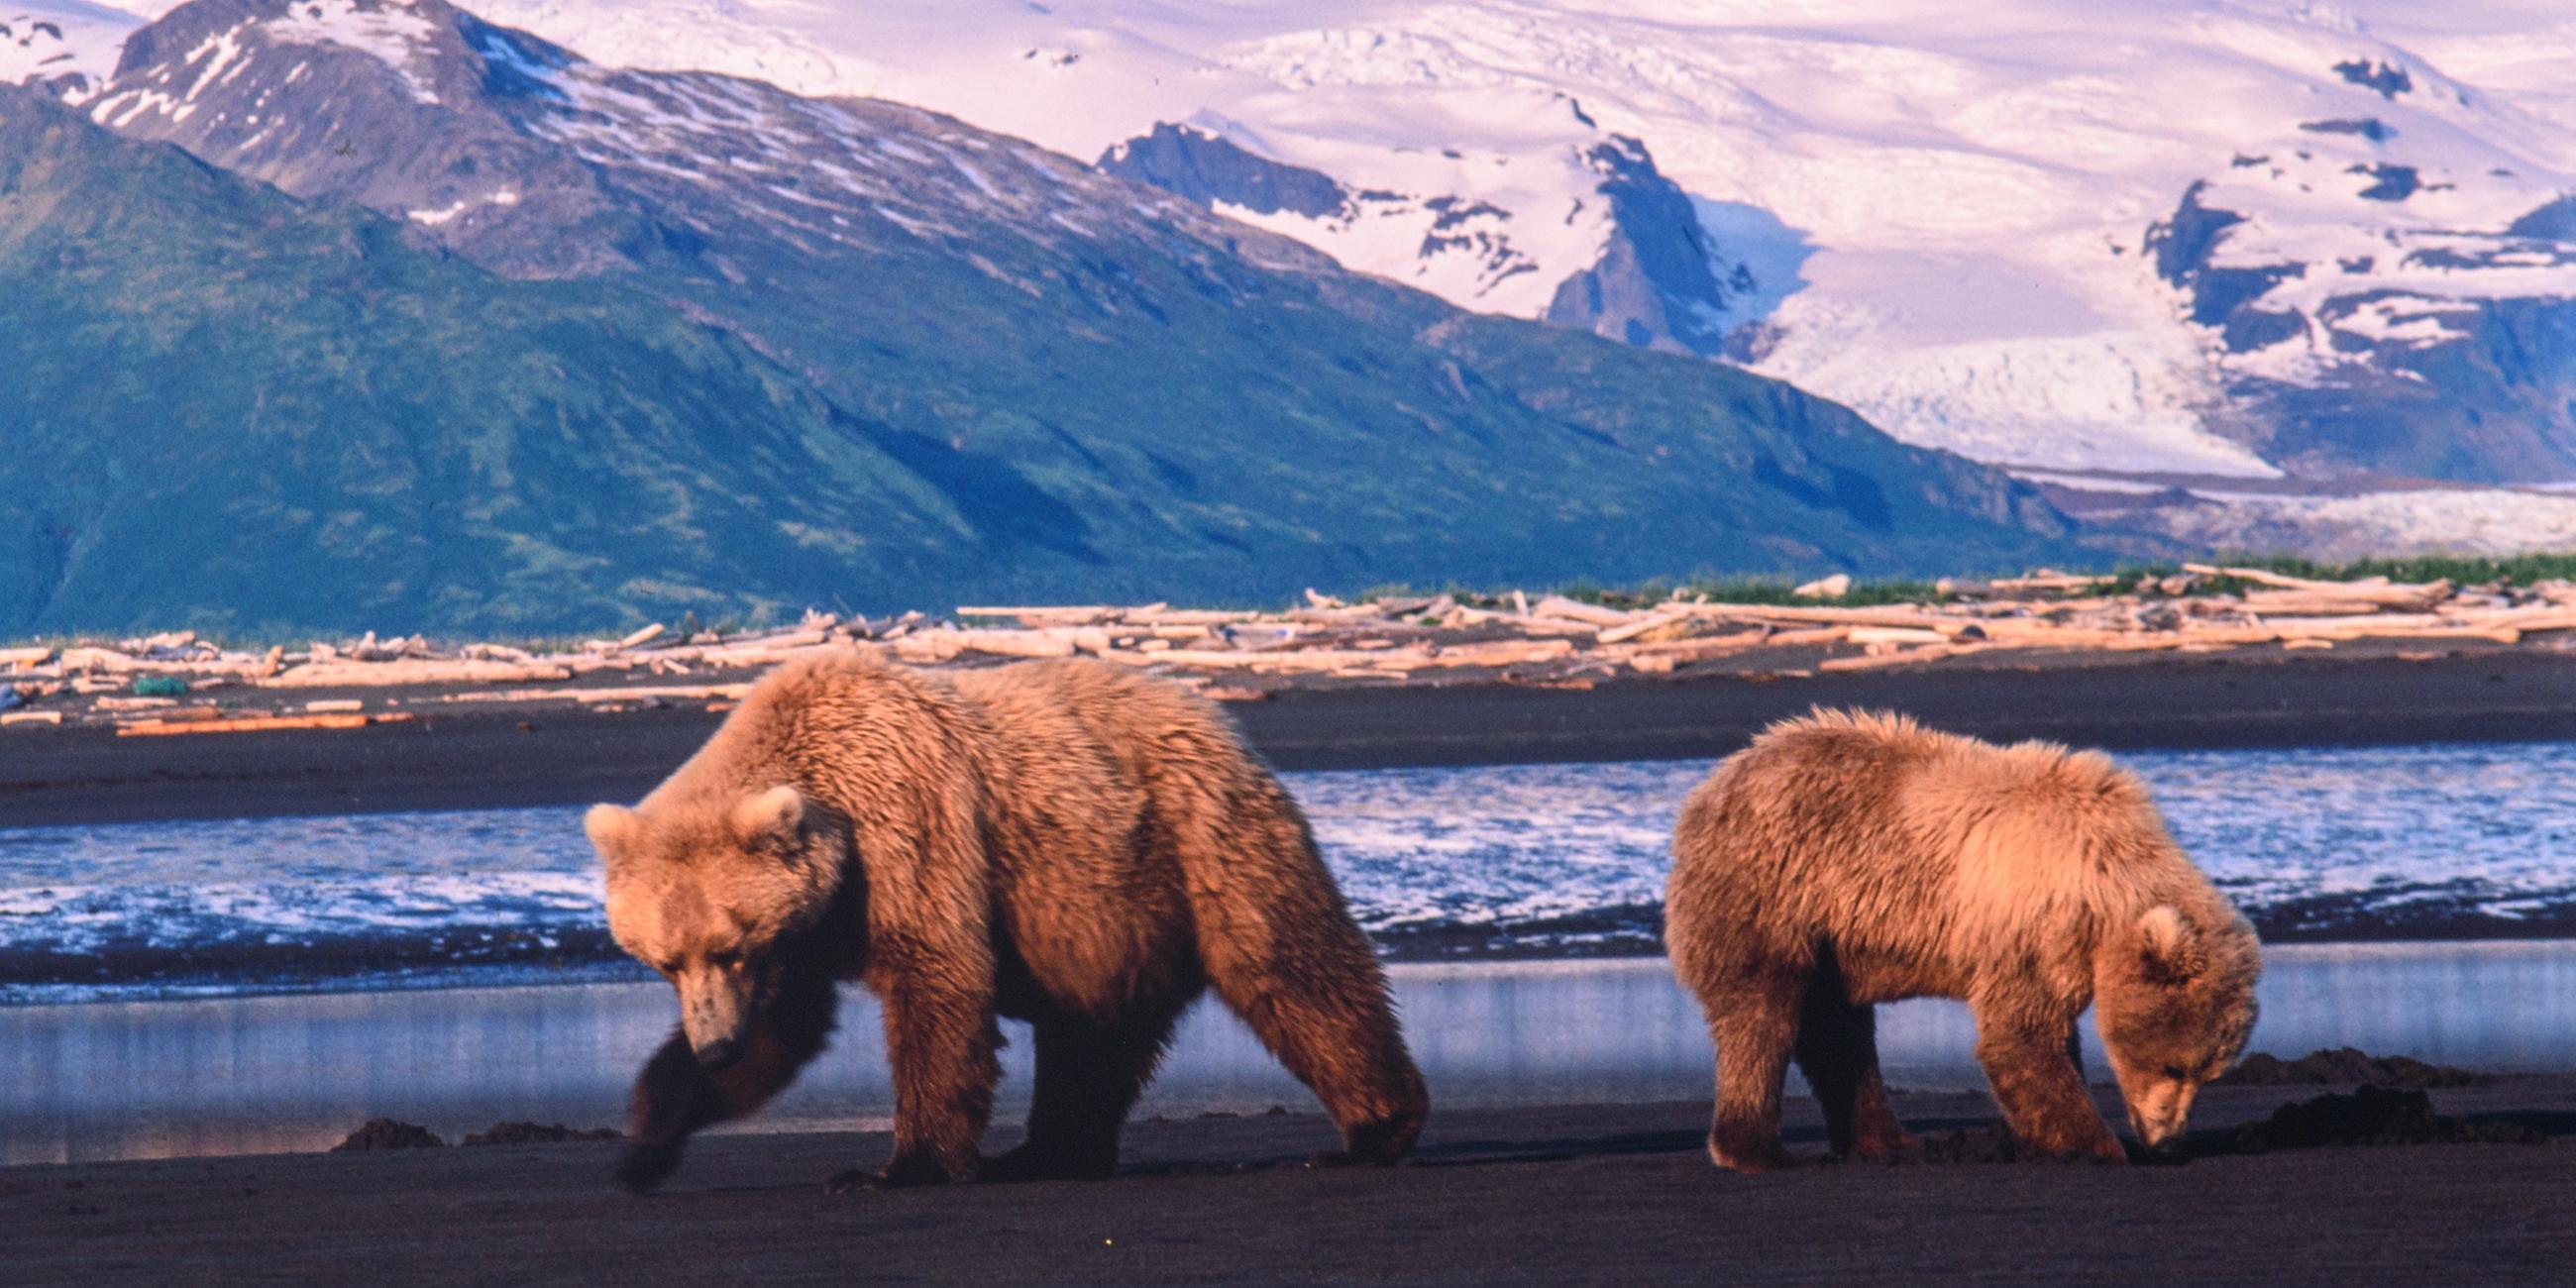 Zwei Bären vor schneebedeckten Bergen beim Fressen, von einander abgewandt, Muscheln aus dem Watt.